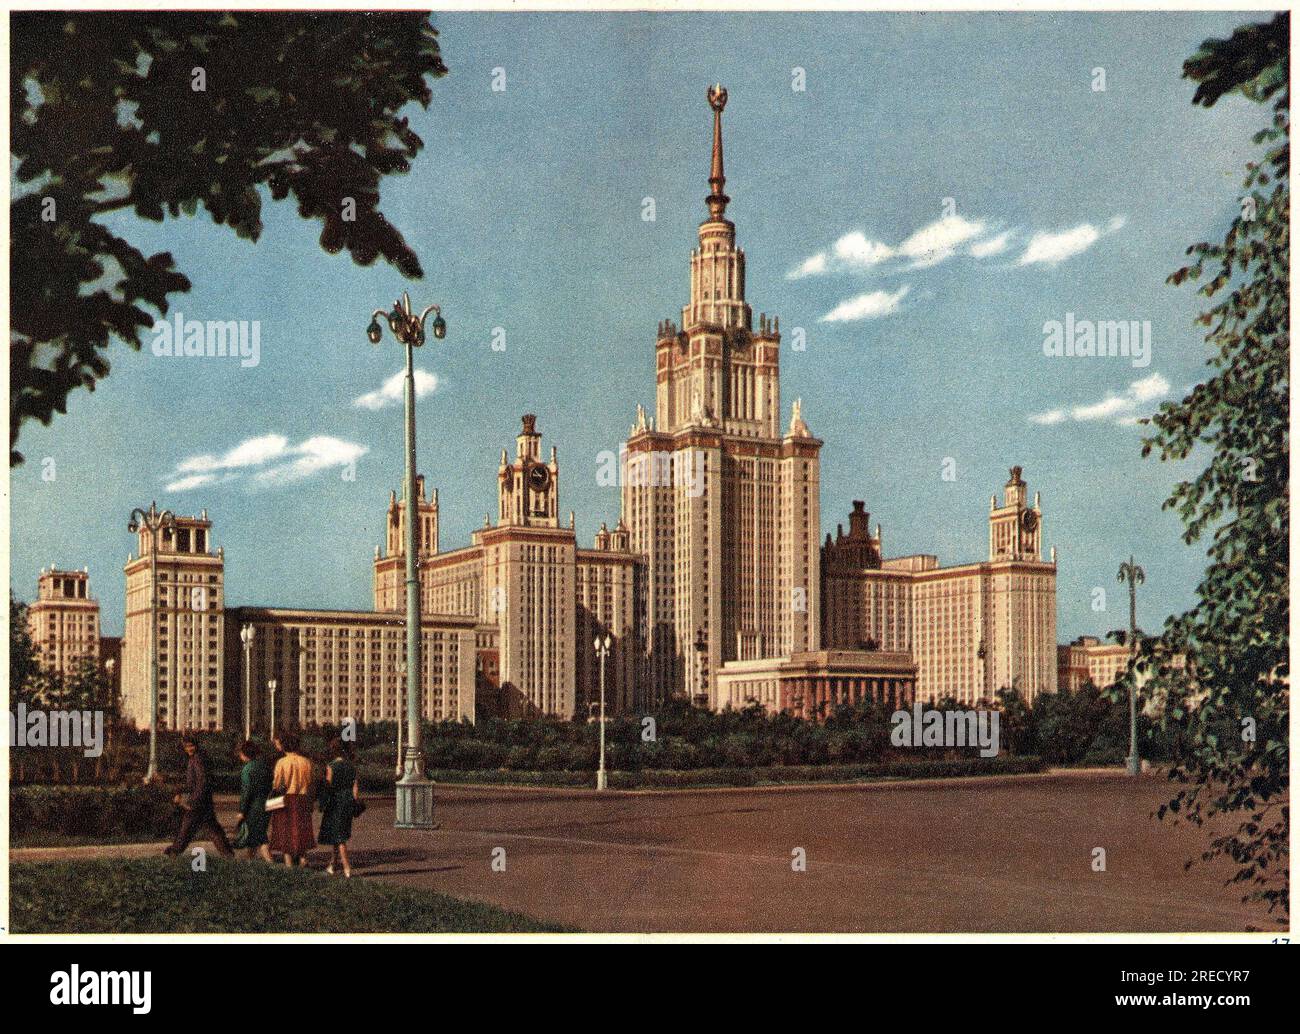 Architektur Stalinienne, l'Universite de Moscou construite en 1952. Fotografie, Moscou, 1955. Stockfoto